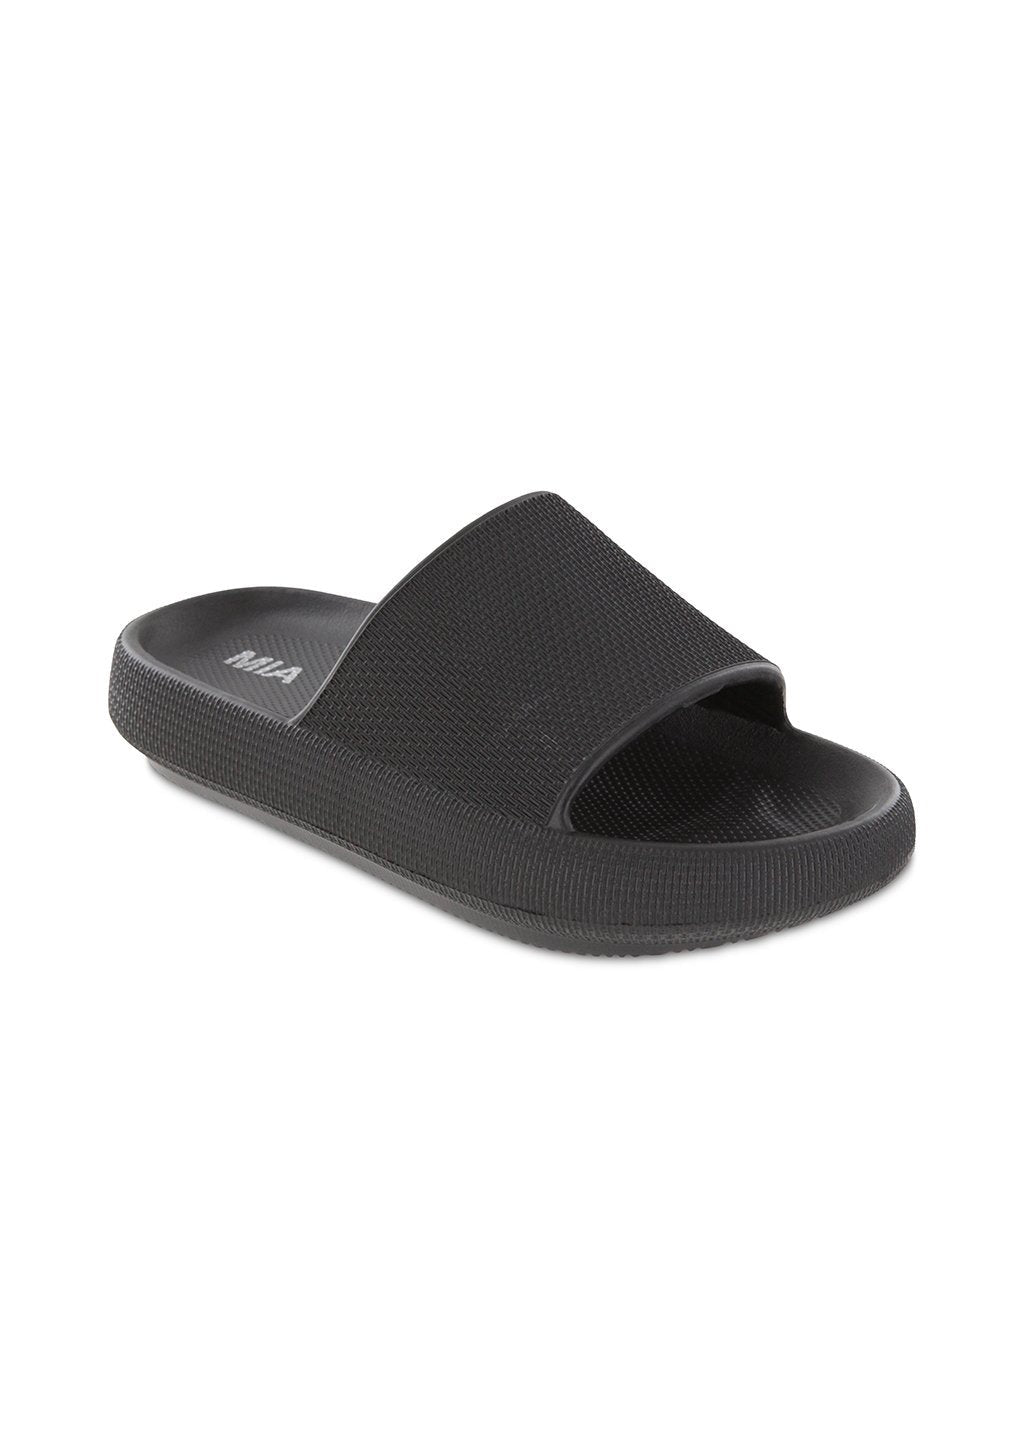 Lexa Slide Sandals - Black